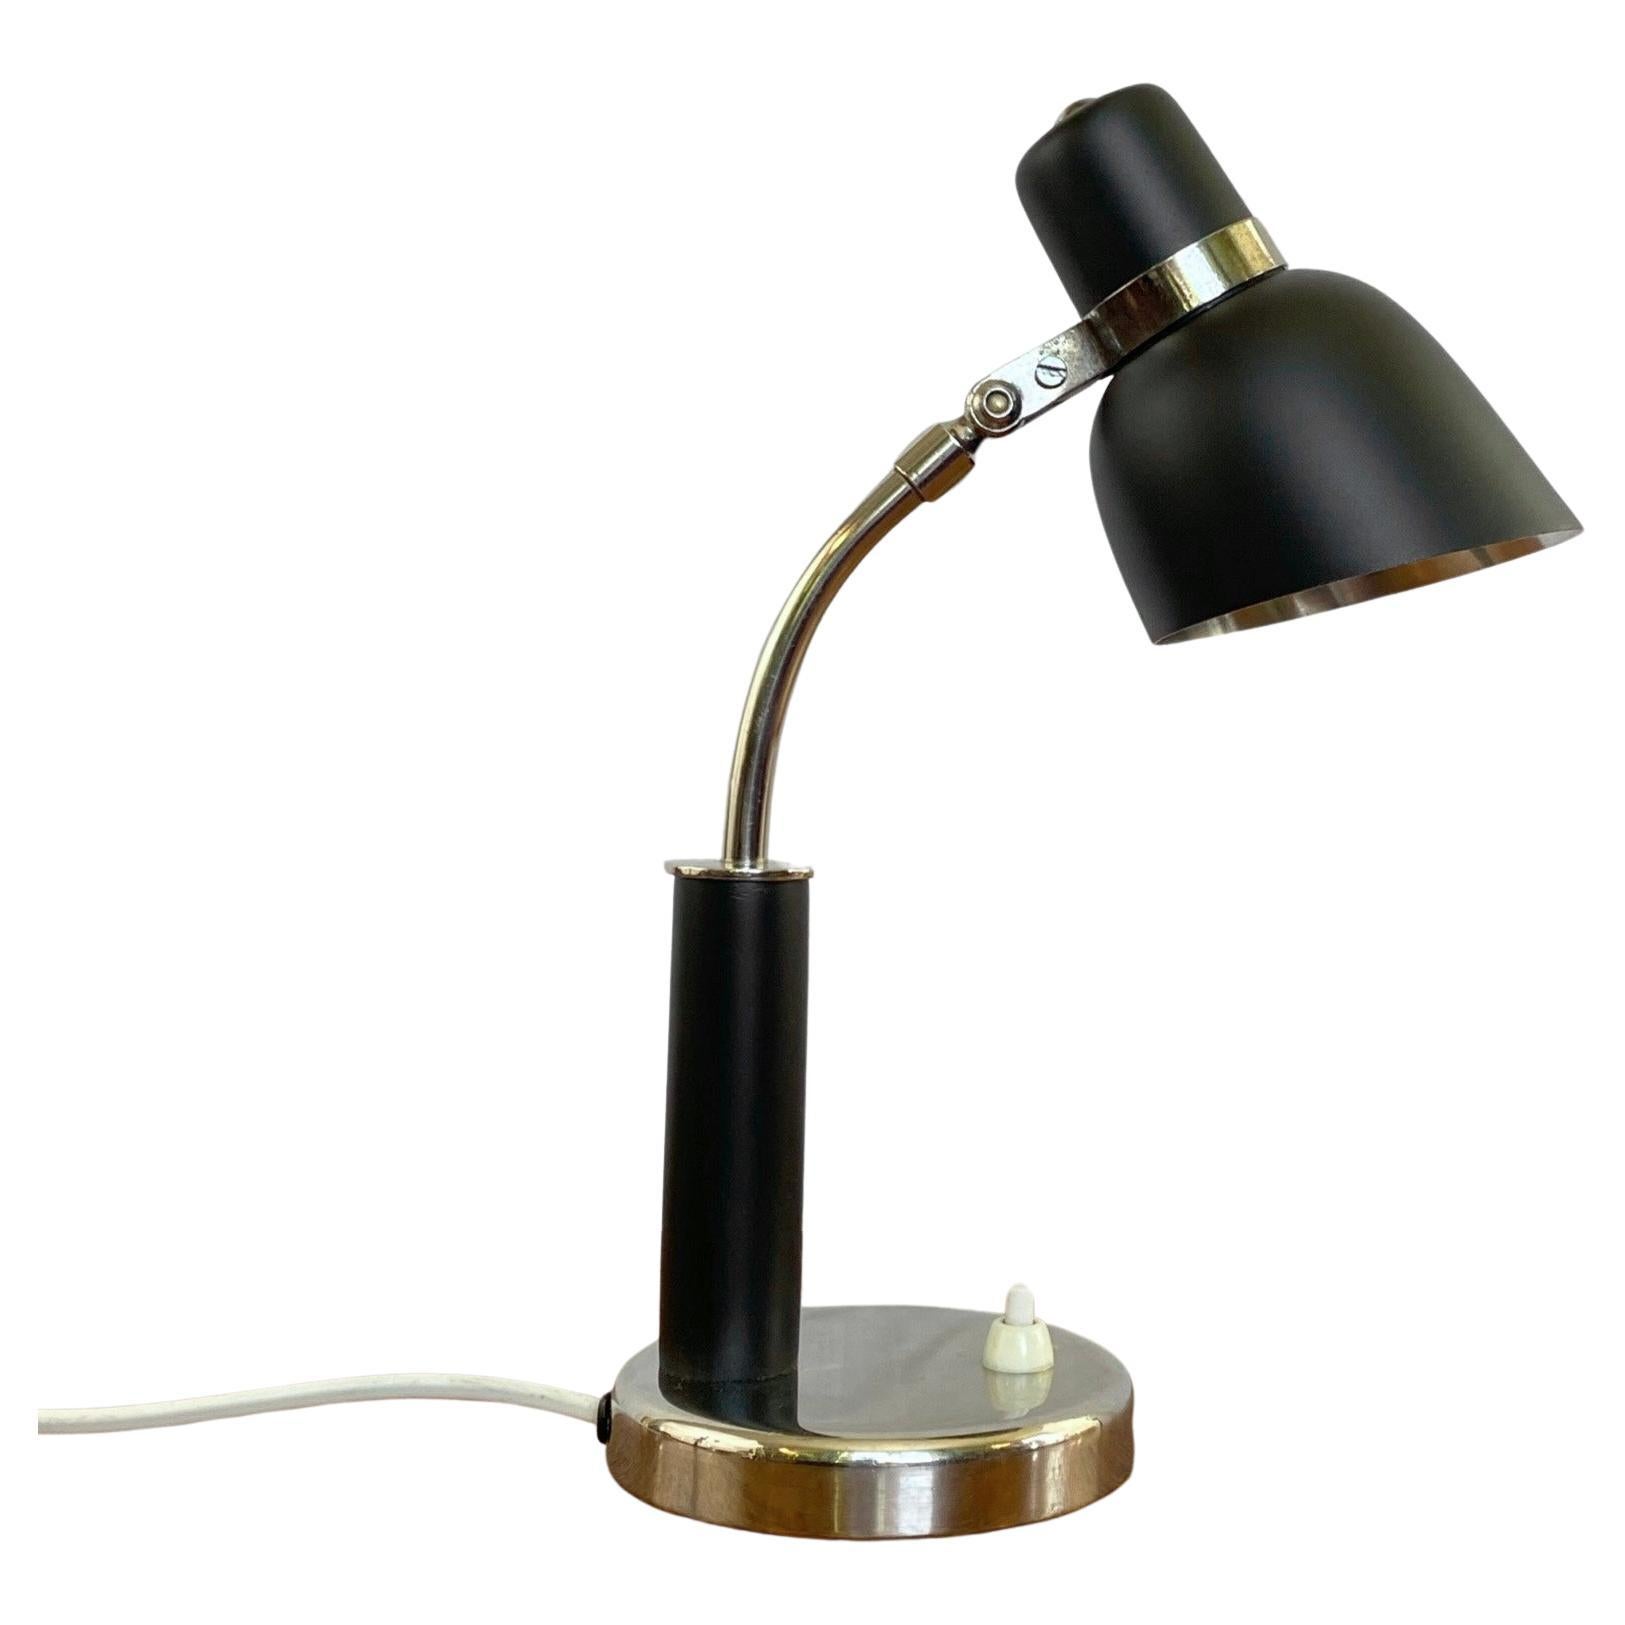 Modernist desk lamp by Nordiska Kompaniet, Sweden, 1930s